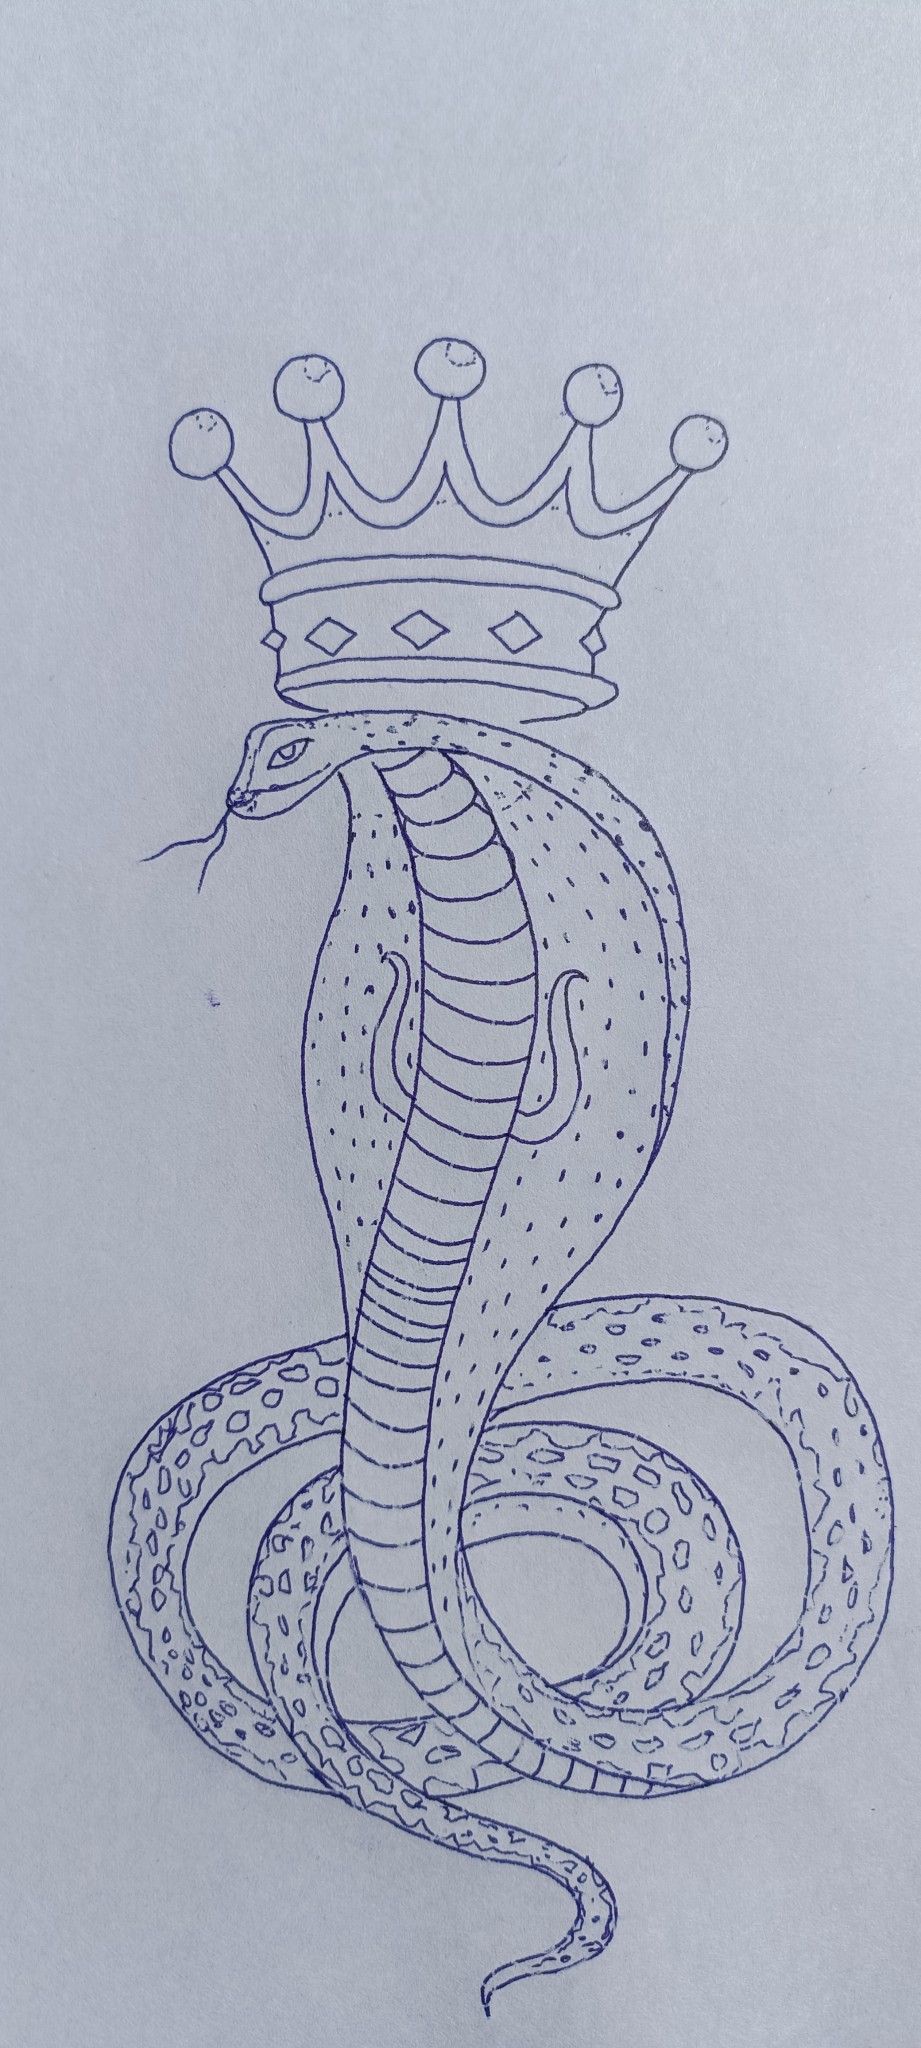 Goga maharaj tattoo stensil | Goga maharaj tattoo with crown